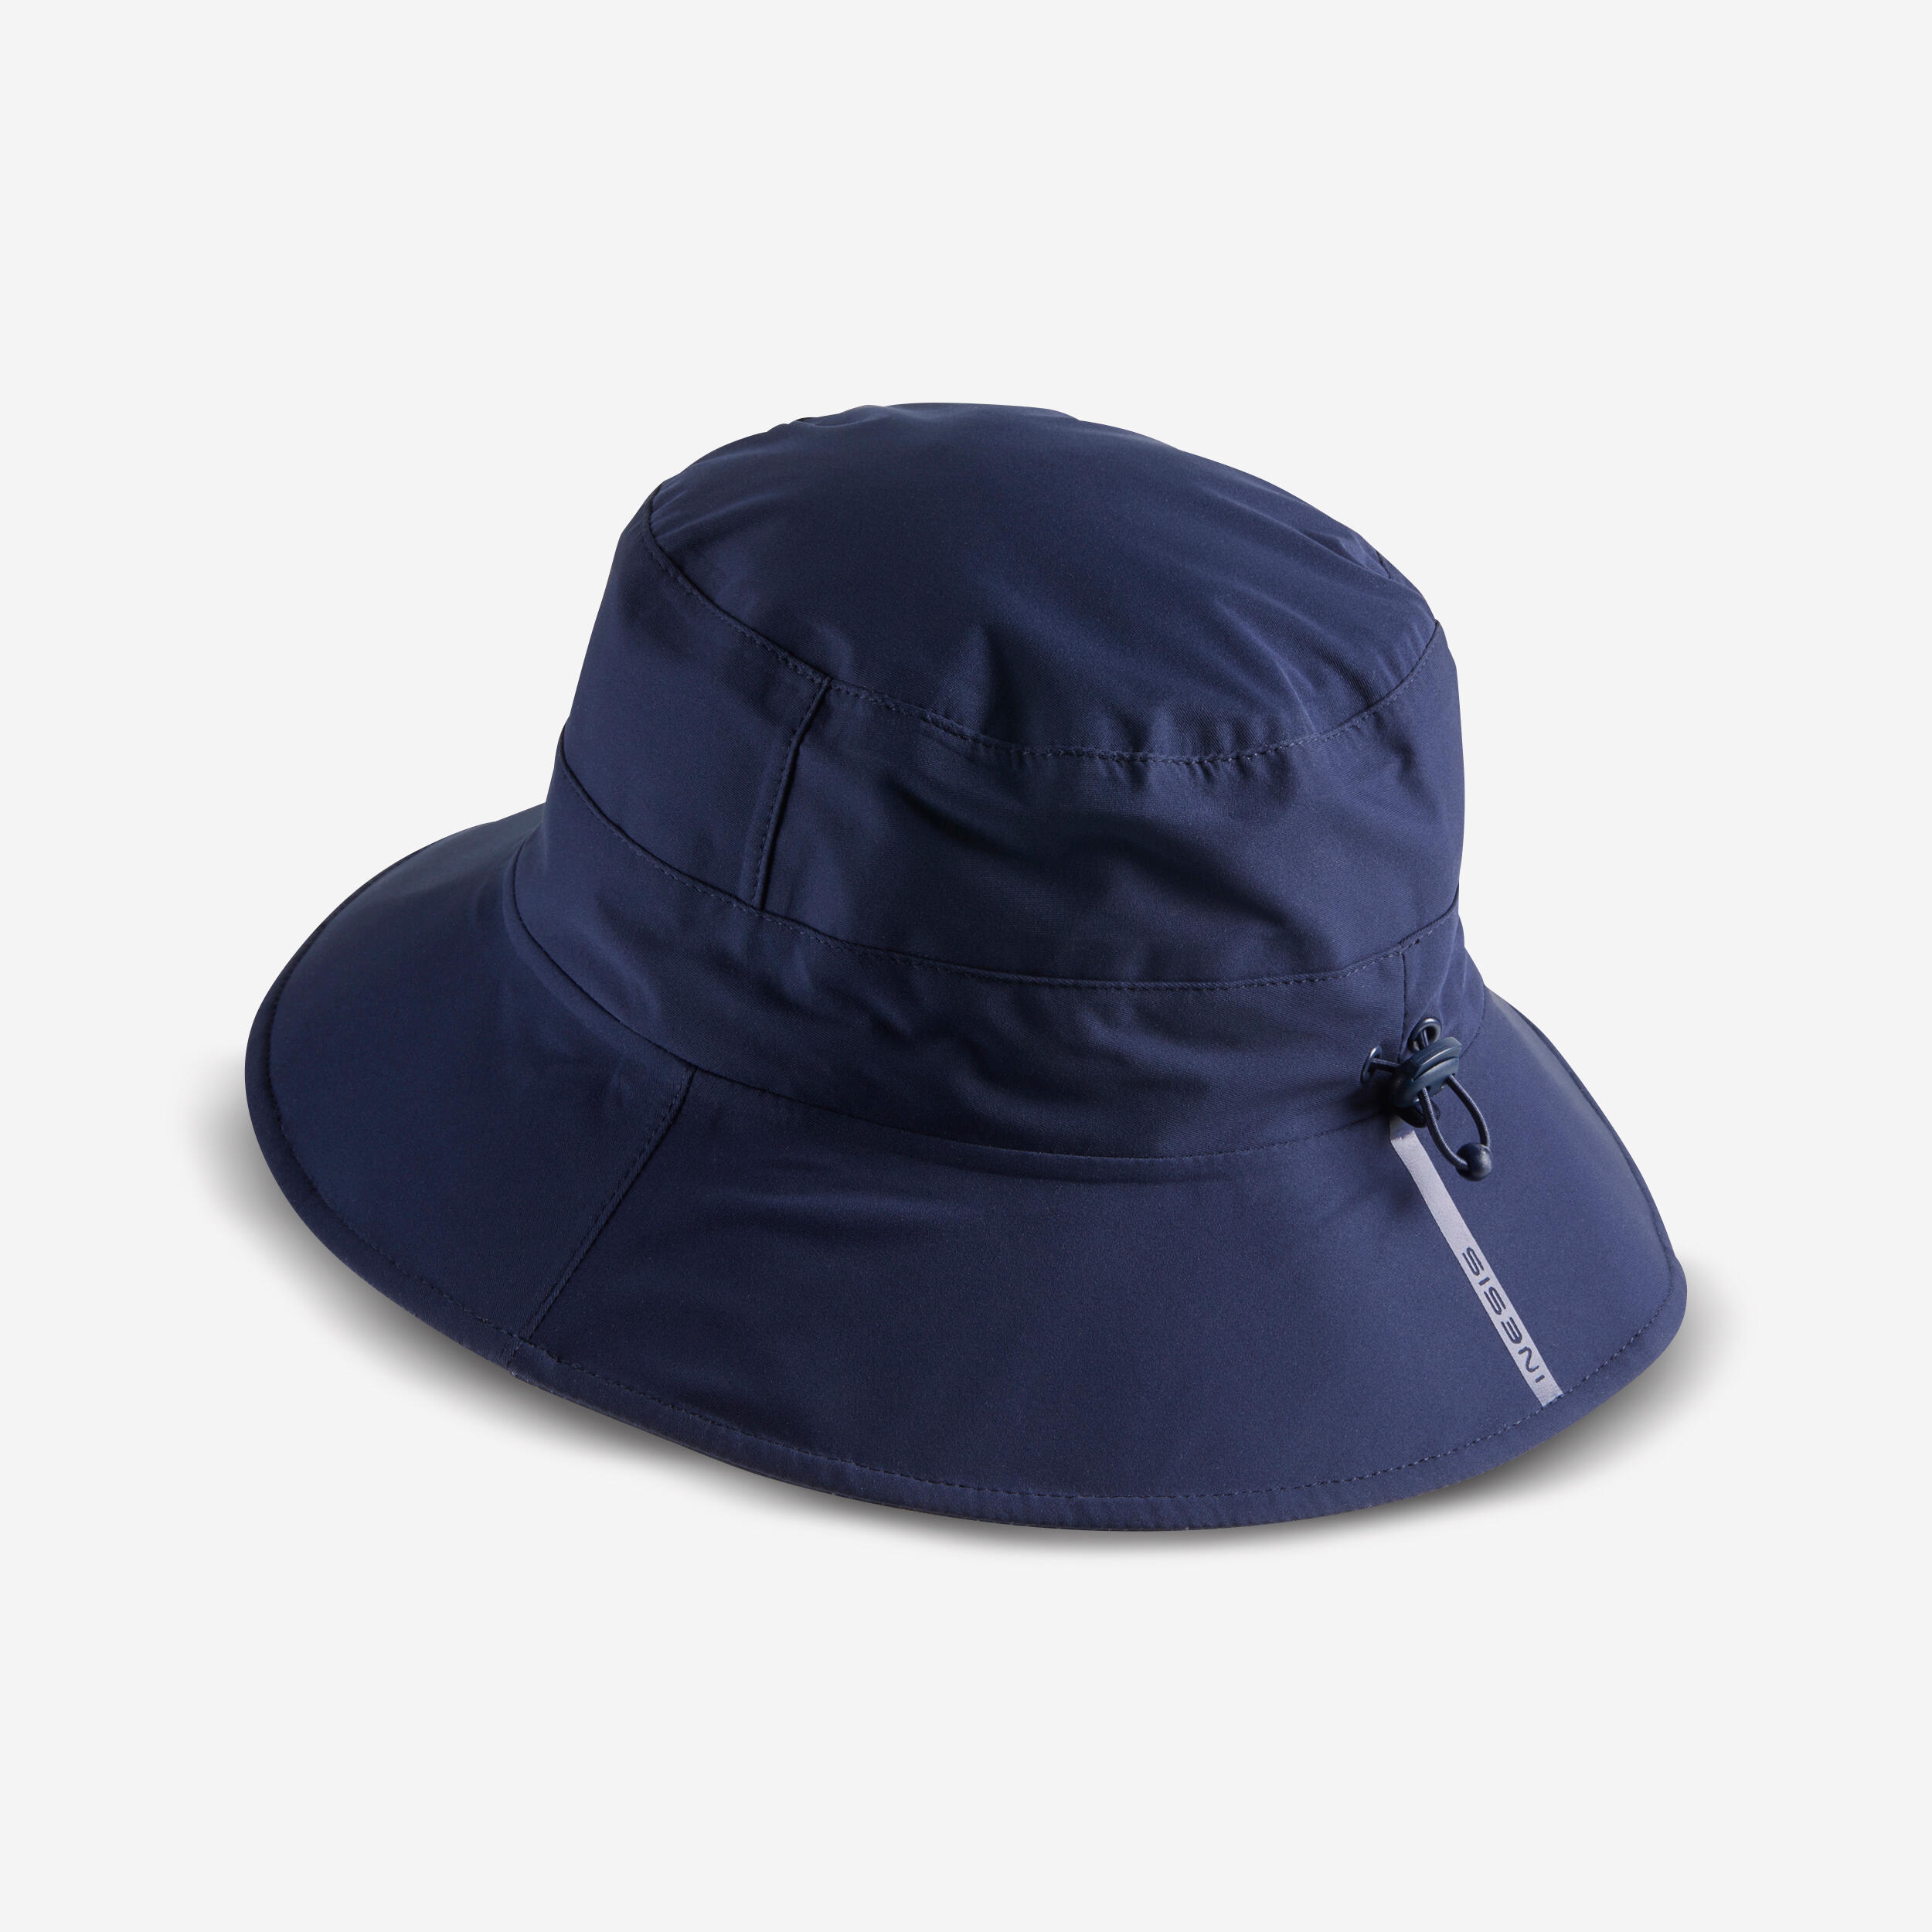 Golf Caps, Hats and Visors